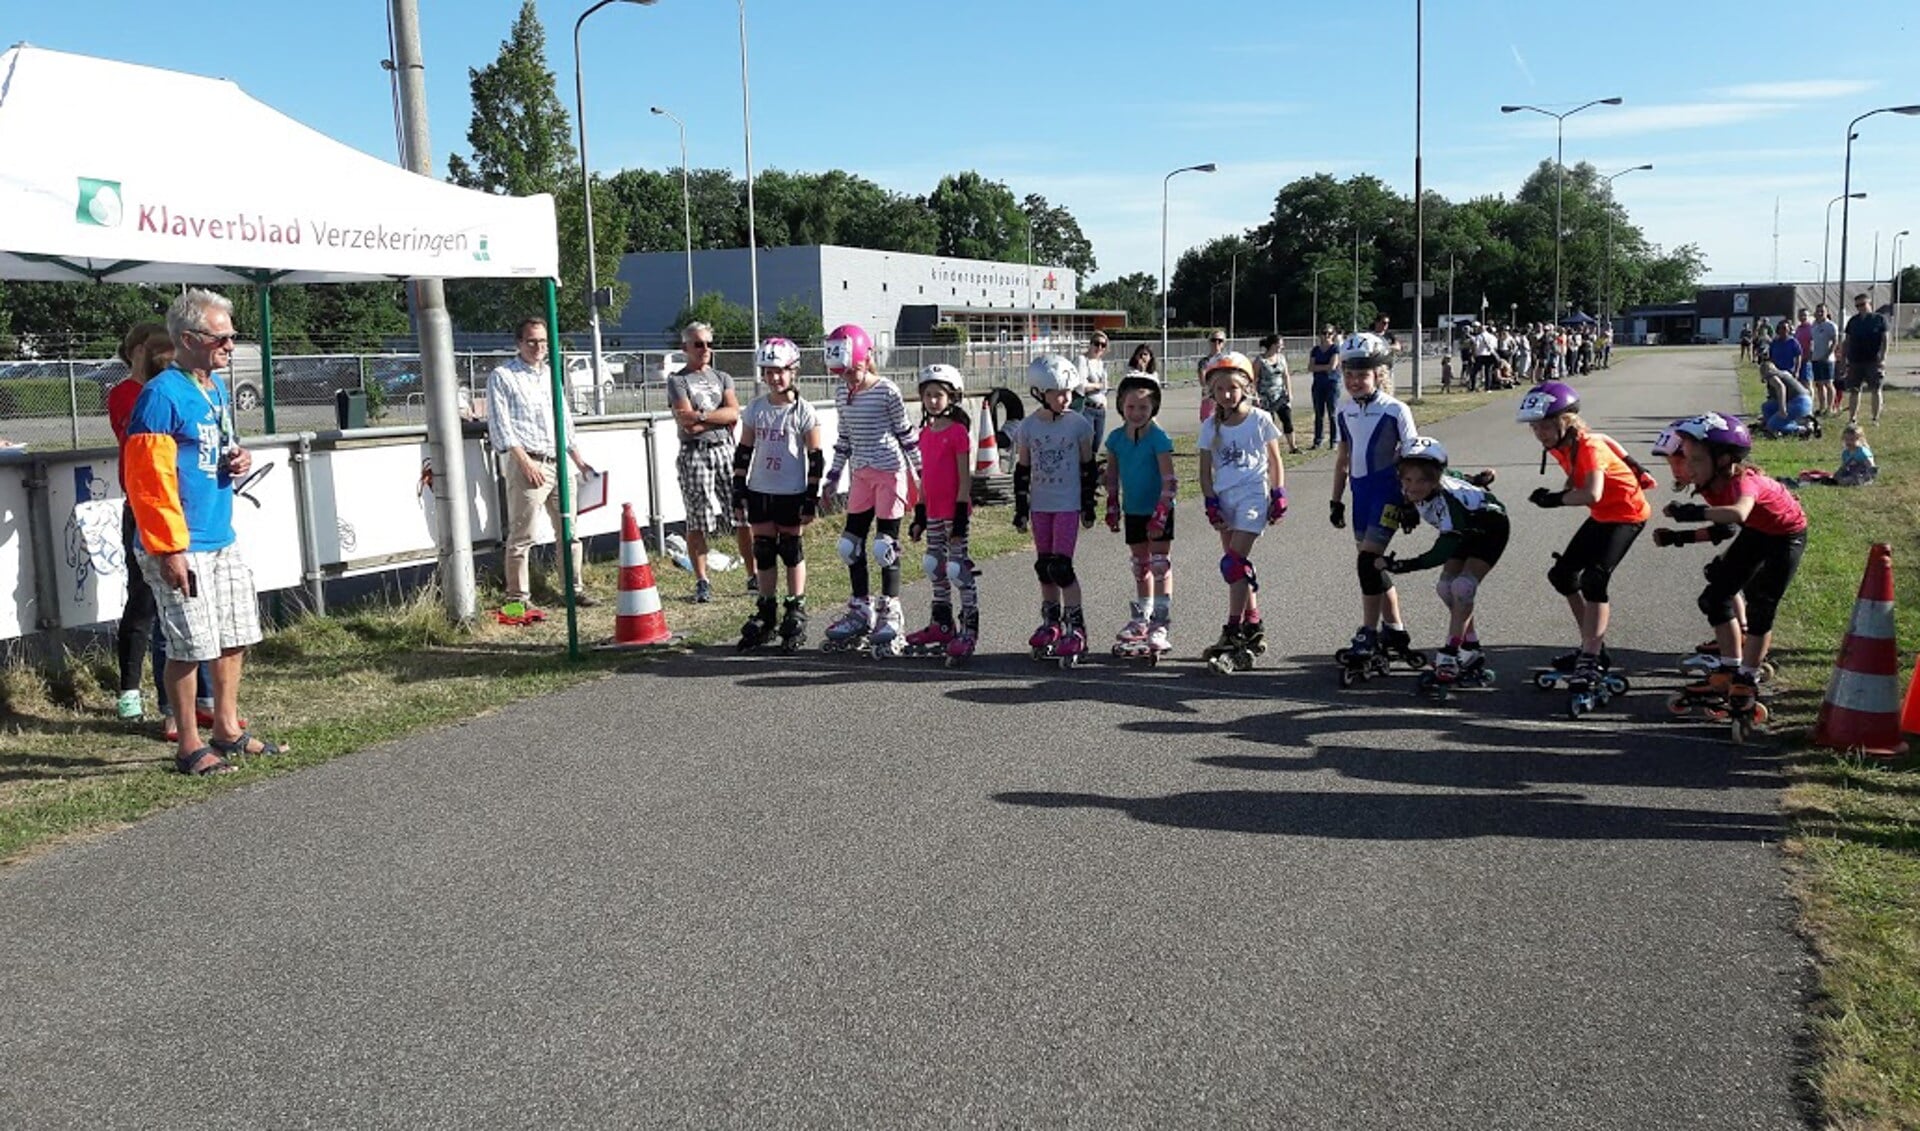 Inline kampioenschap skaten Breda